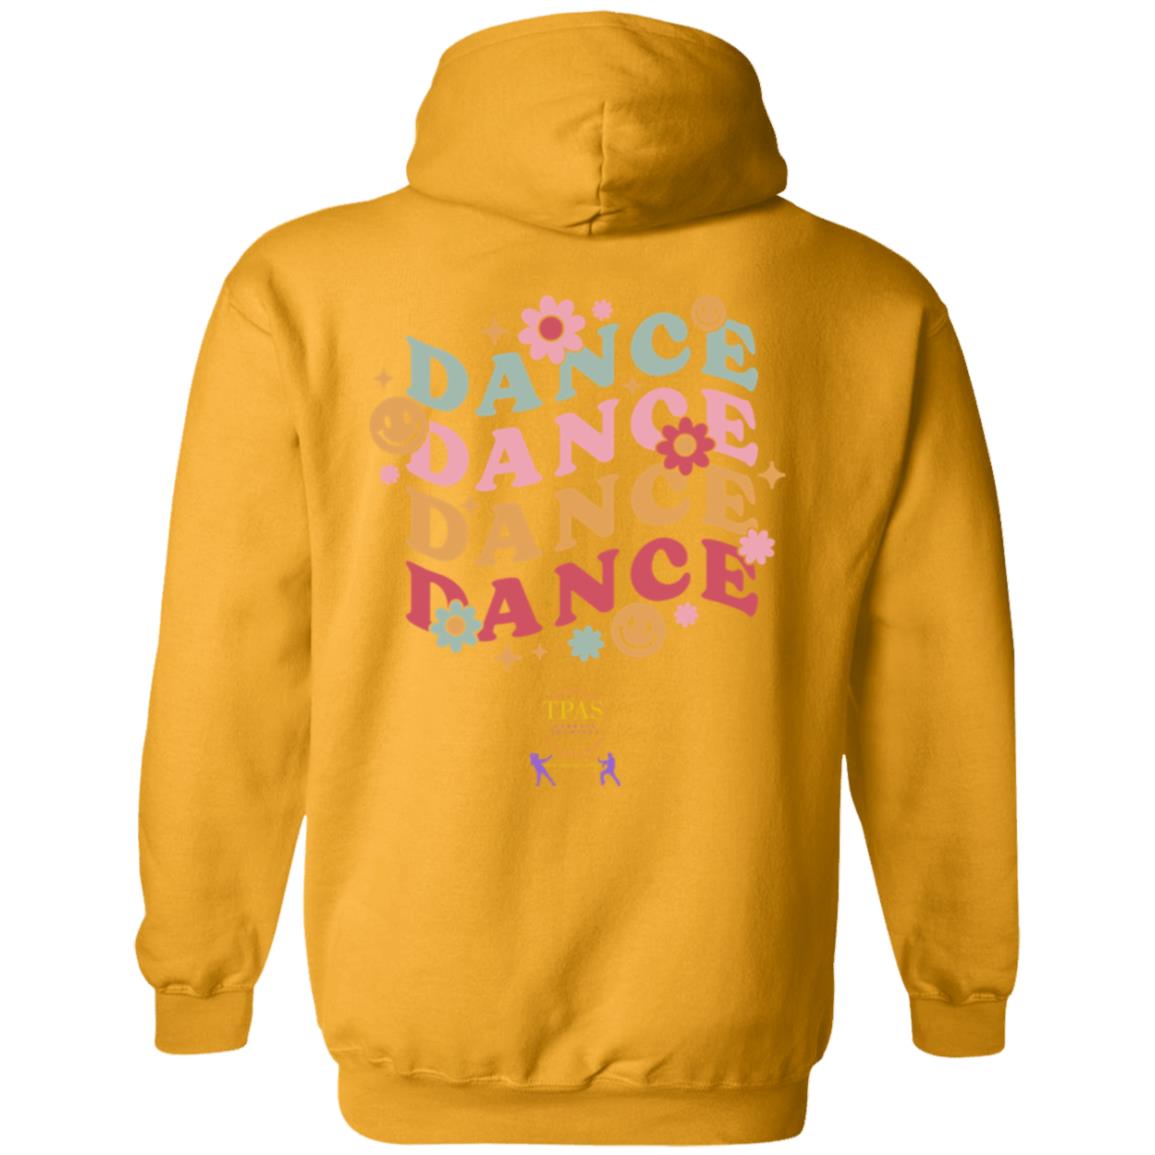 TPAS Dance, Dance, Dance Pullover Hoodie